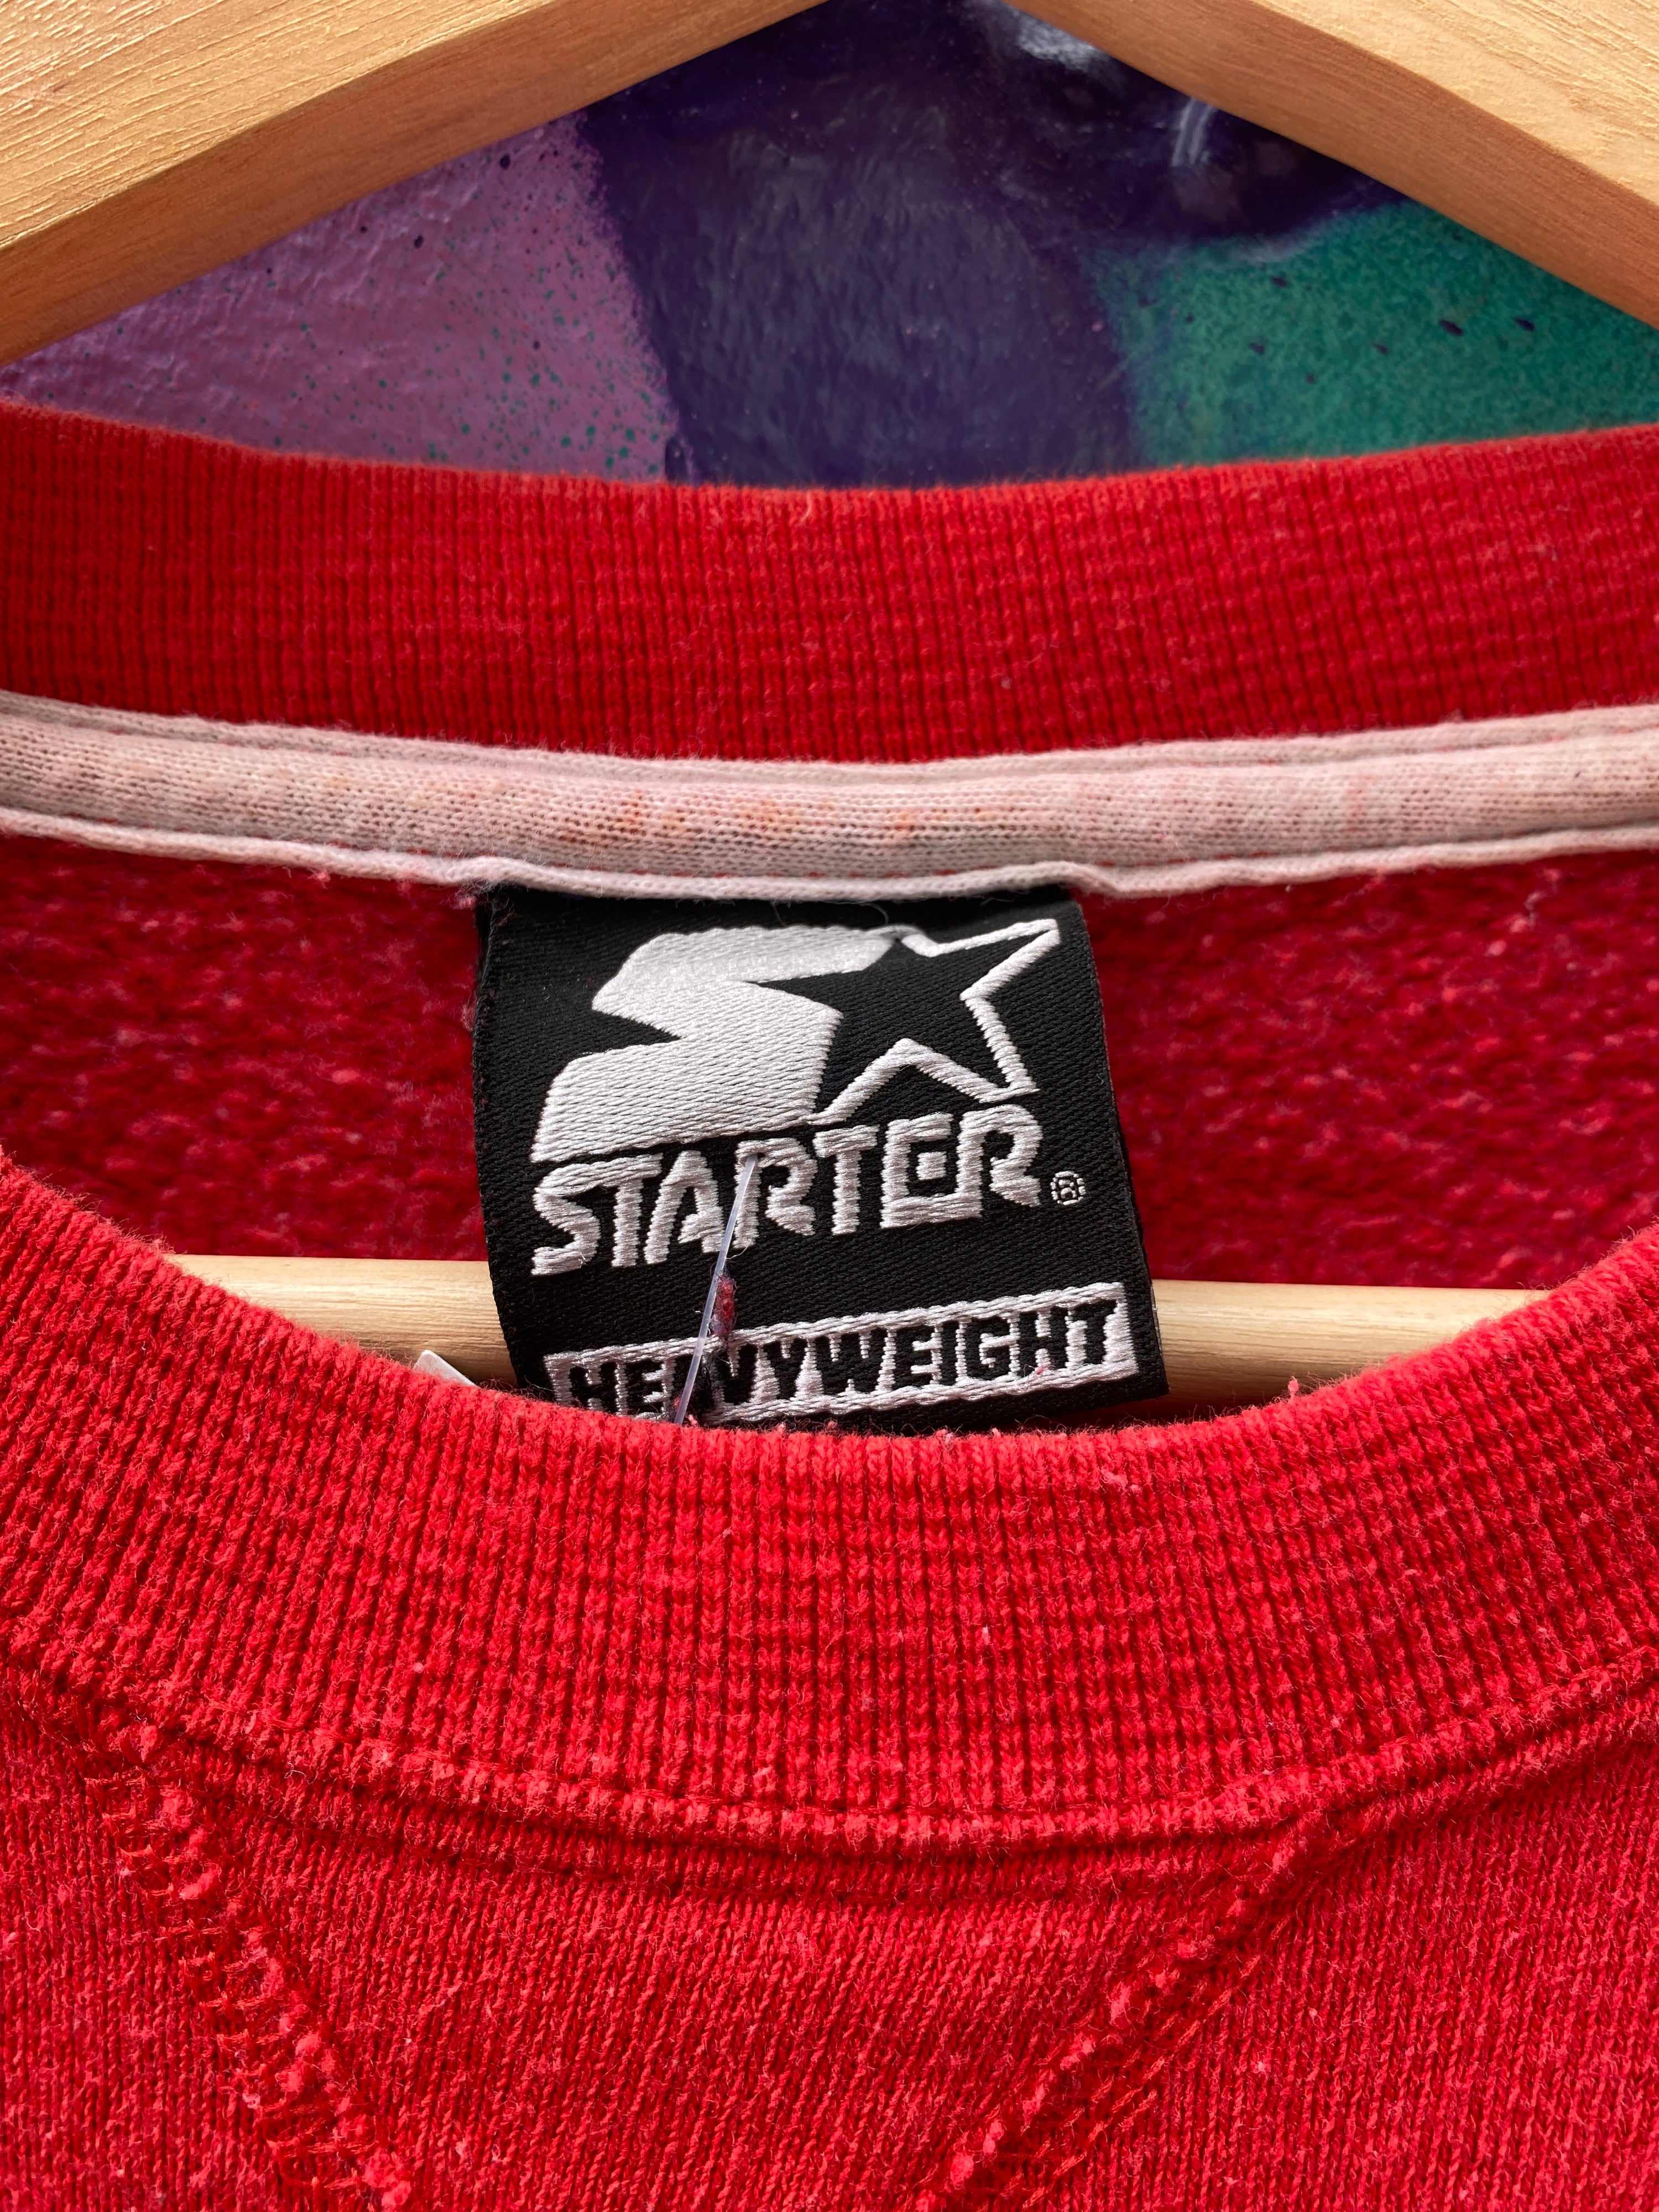 L - Starter Heavyweight Red Jumper Pocket Logo